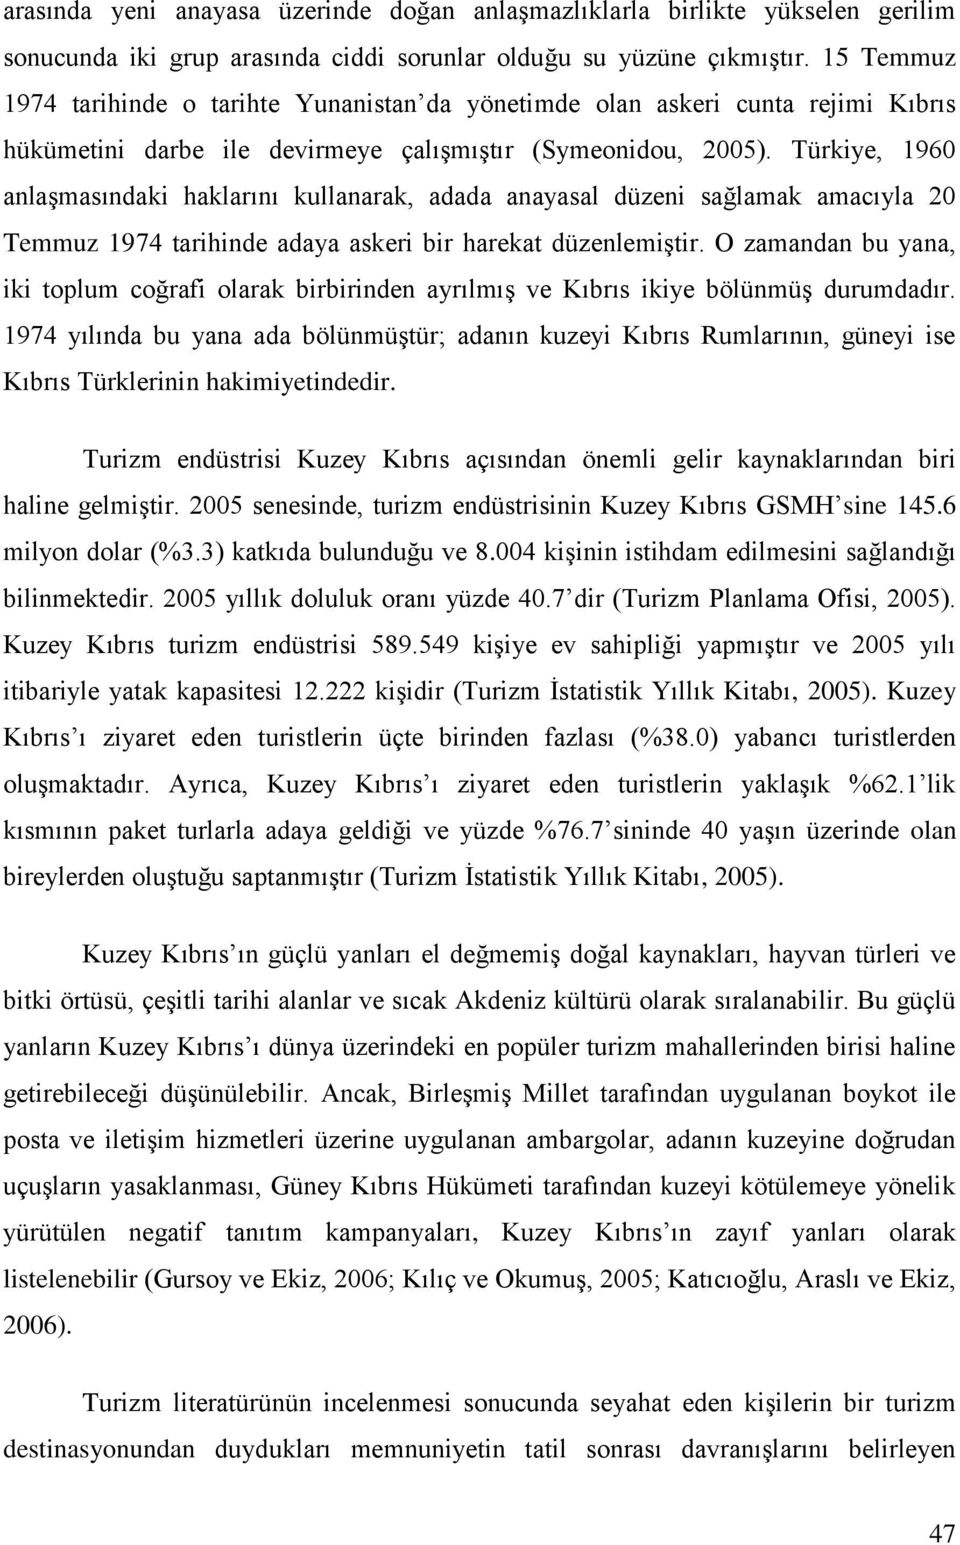 Türkiye, 1960 anlaşmasındaki haklarını kullanarak, adada anayasal düzeni sağlamak amacıyla 20 Temmuz 1974 tarihinde adaya askeri bir harekat düzenlemiştir.